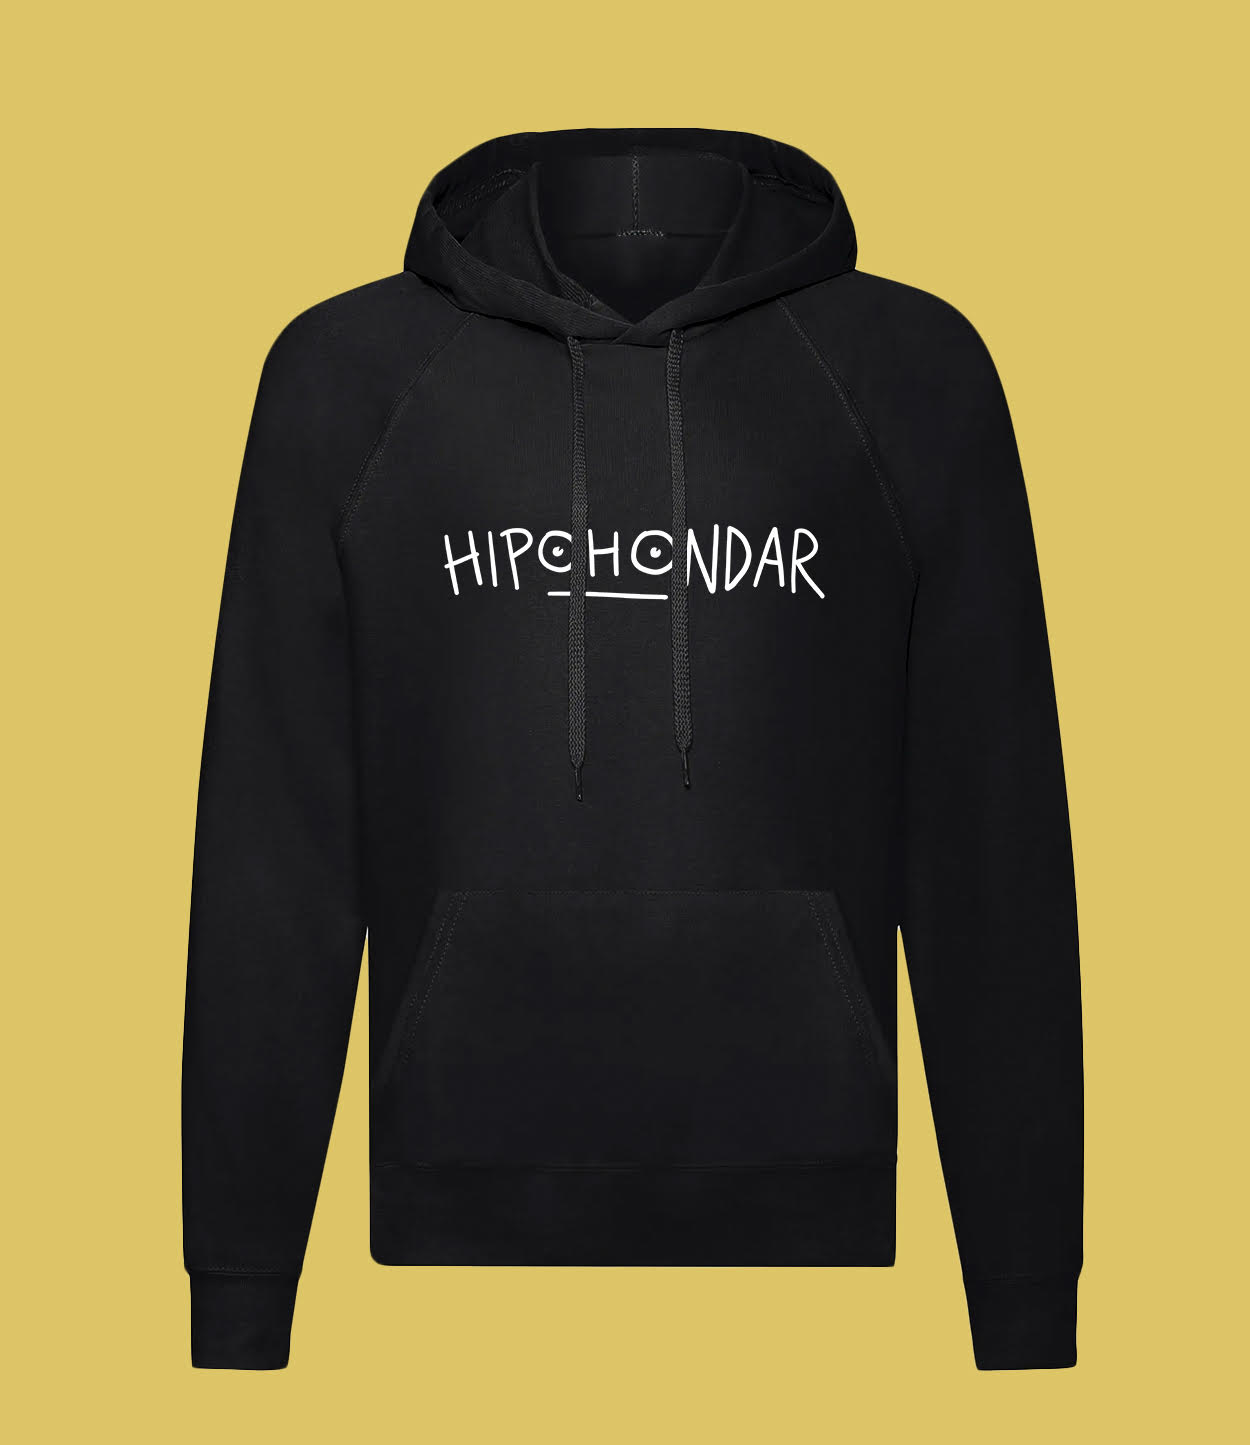 Hipohondar hoodie